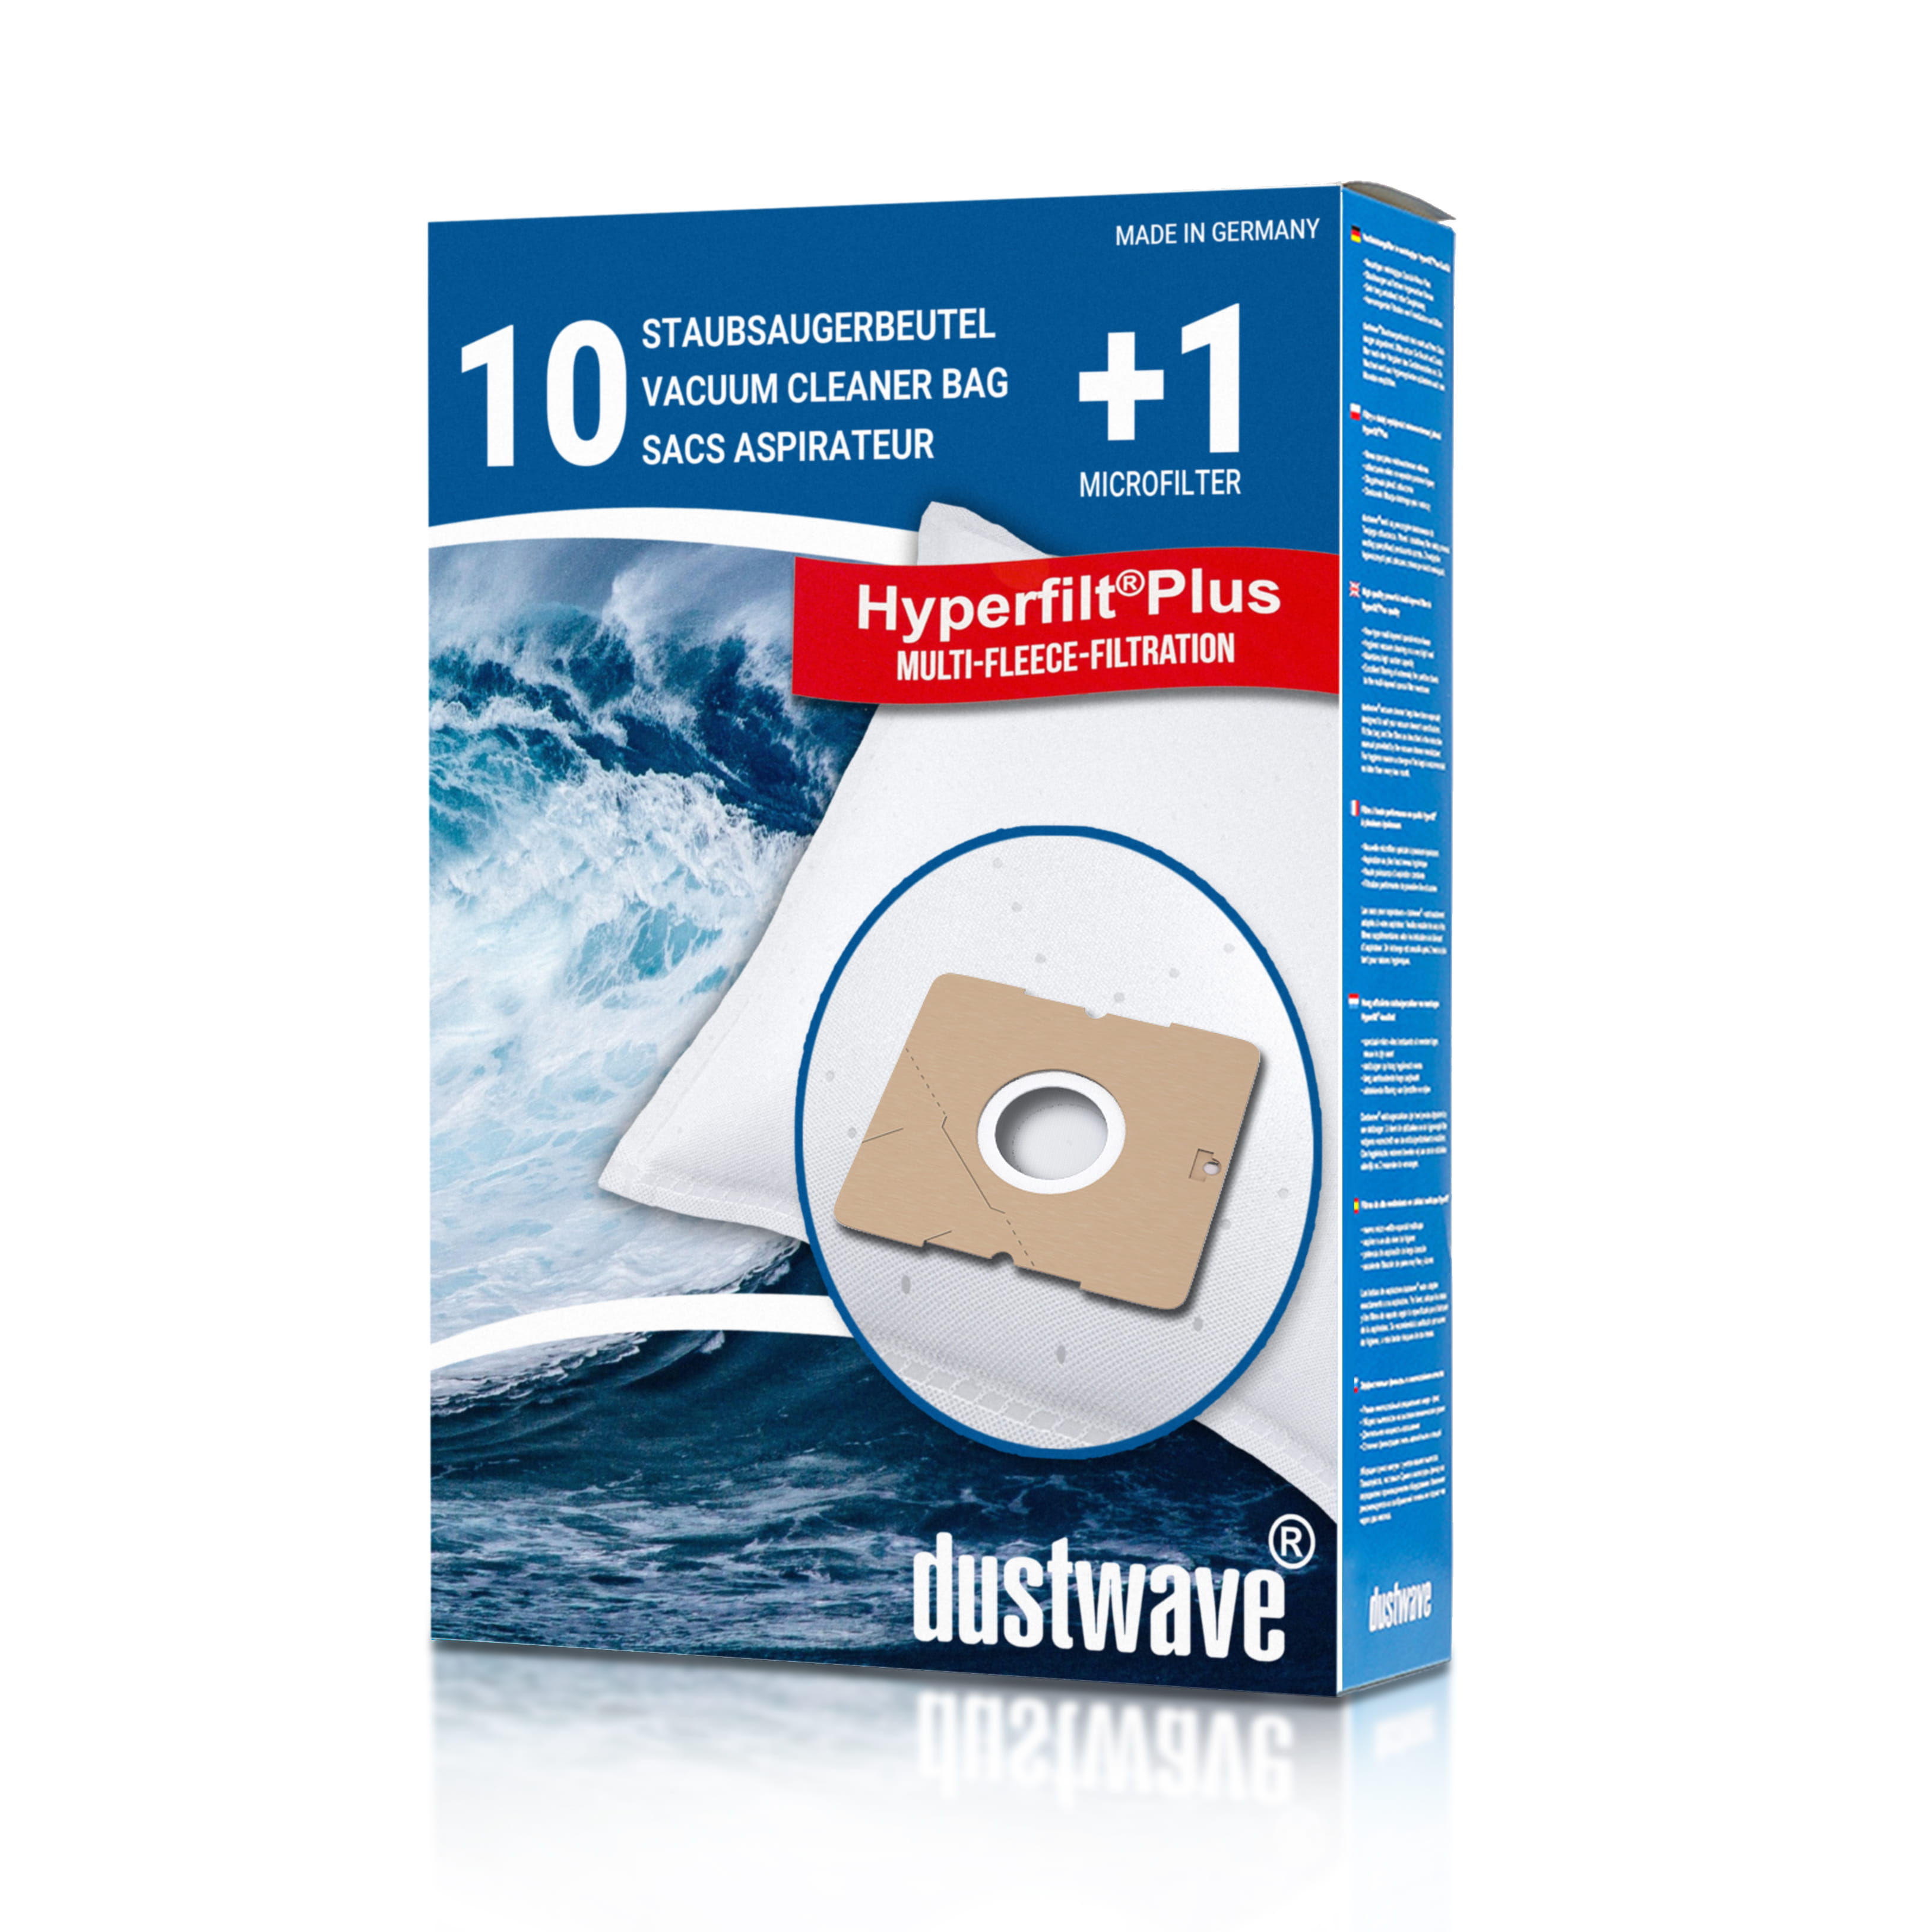 Dustwave® 10 Staubsaugerbeutel für AEG GR50 / Größe 50 - hocheffizient mit Hygieneverschluss - Made in Germany